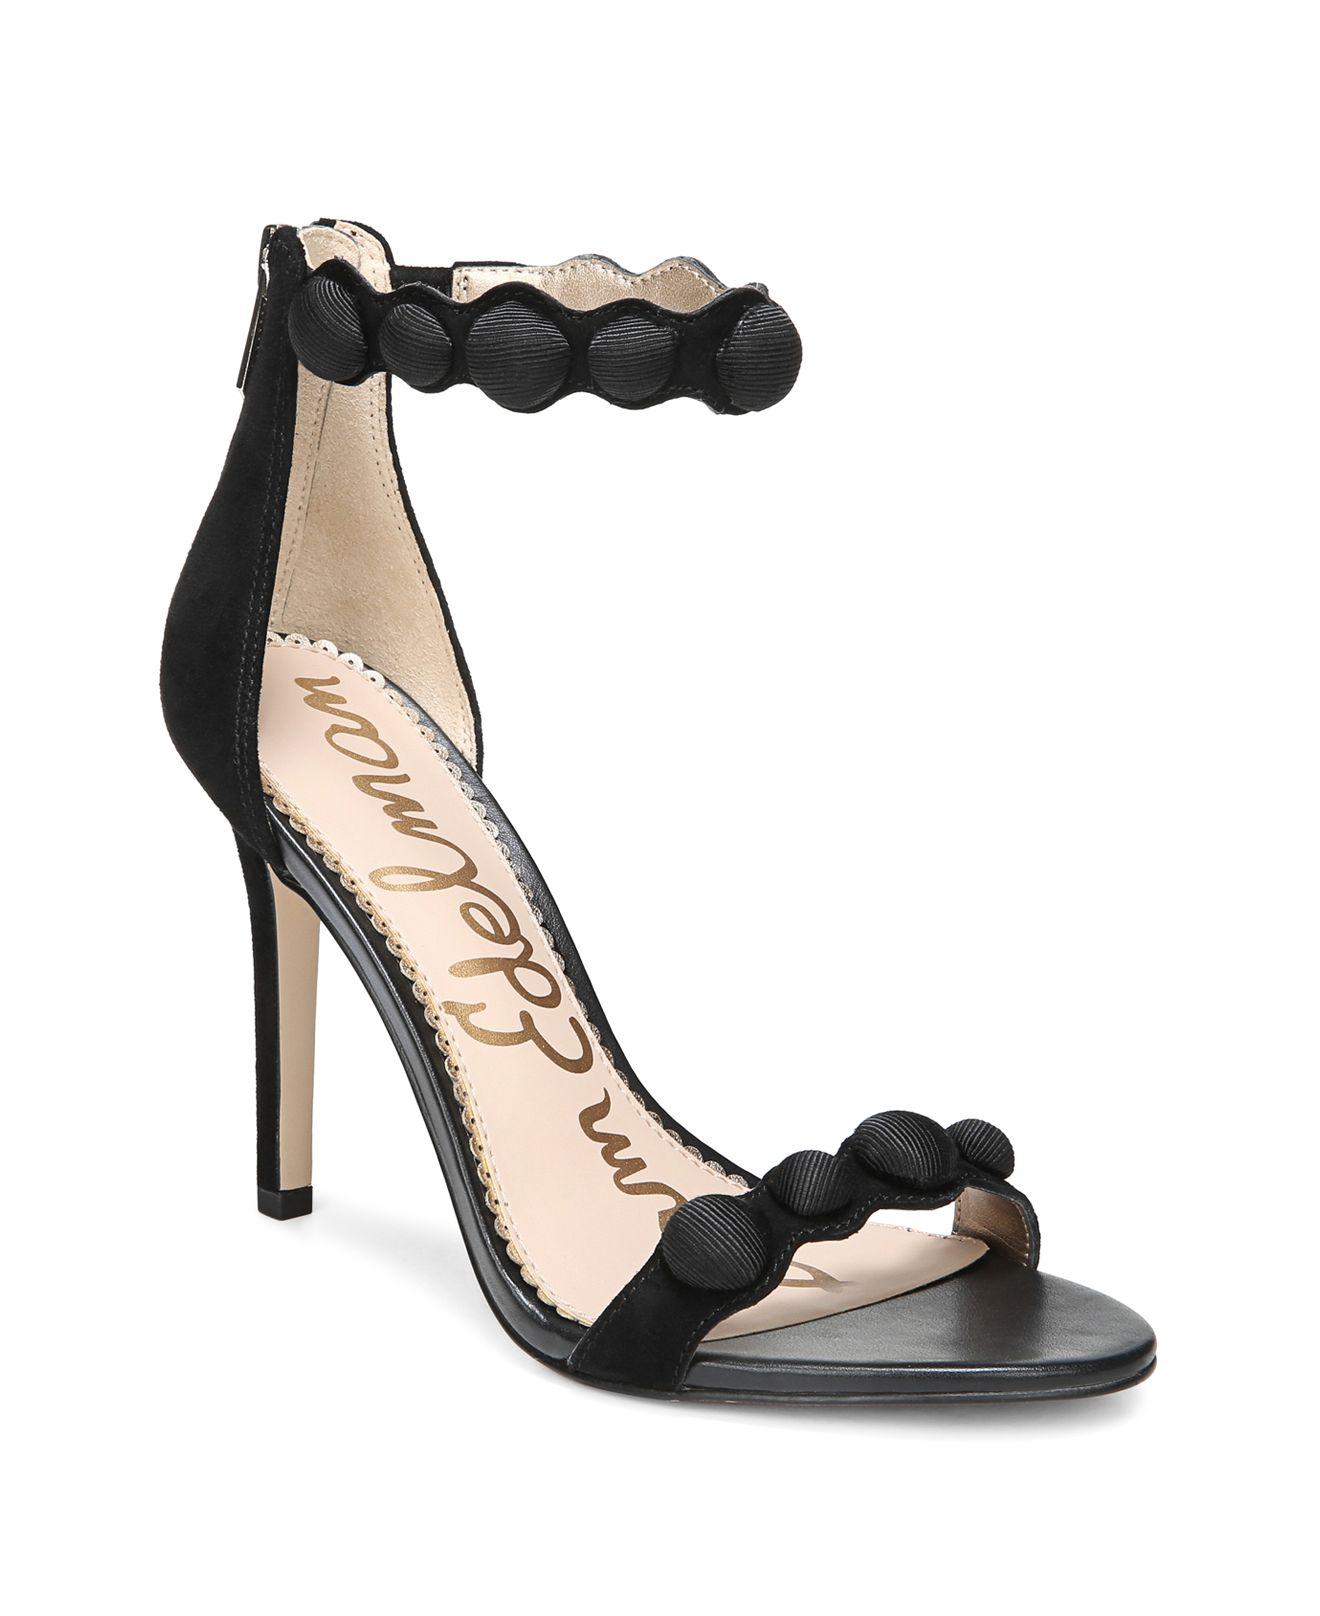 Lyst - Sam Edelman Women's Addison Suede High-heel Ankle Strap Sandals ...